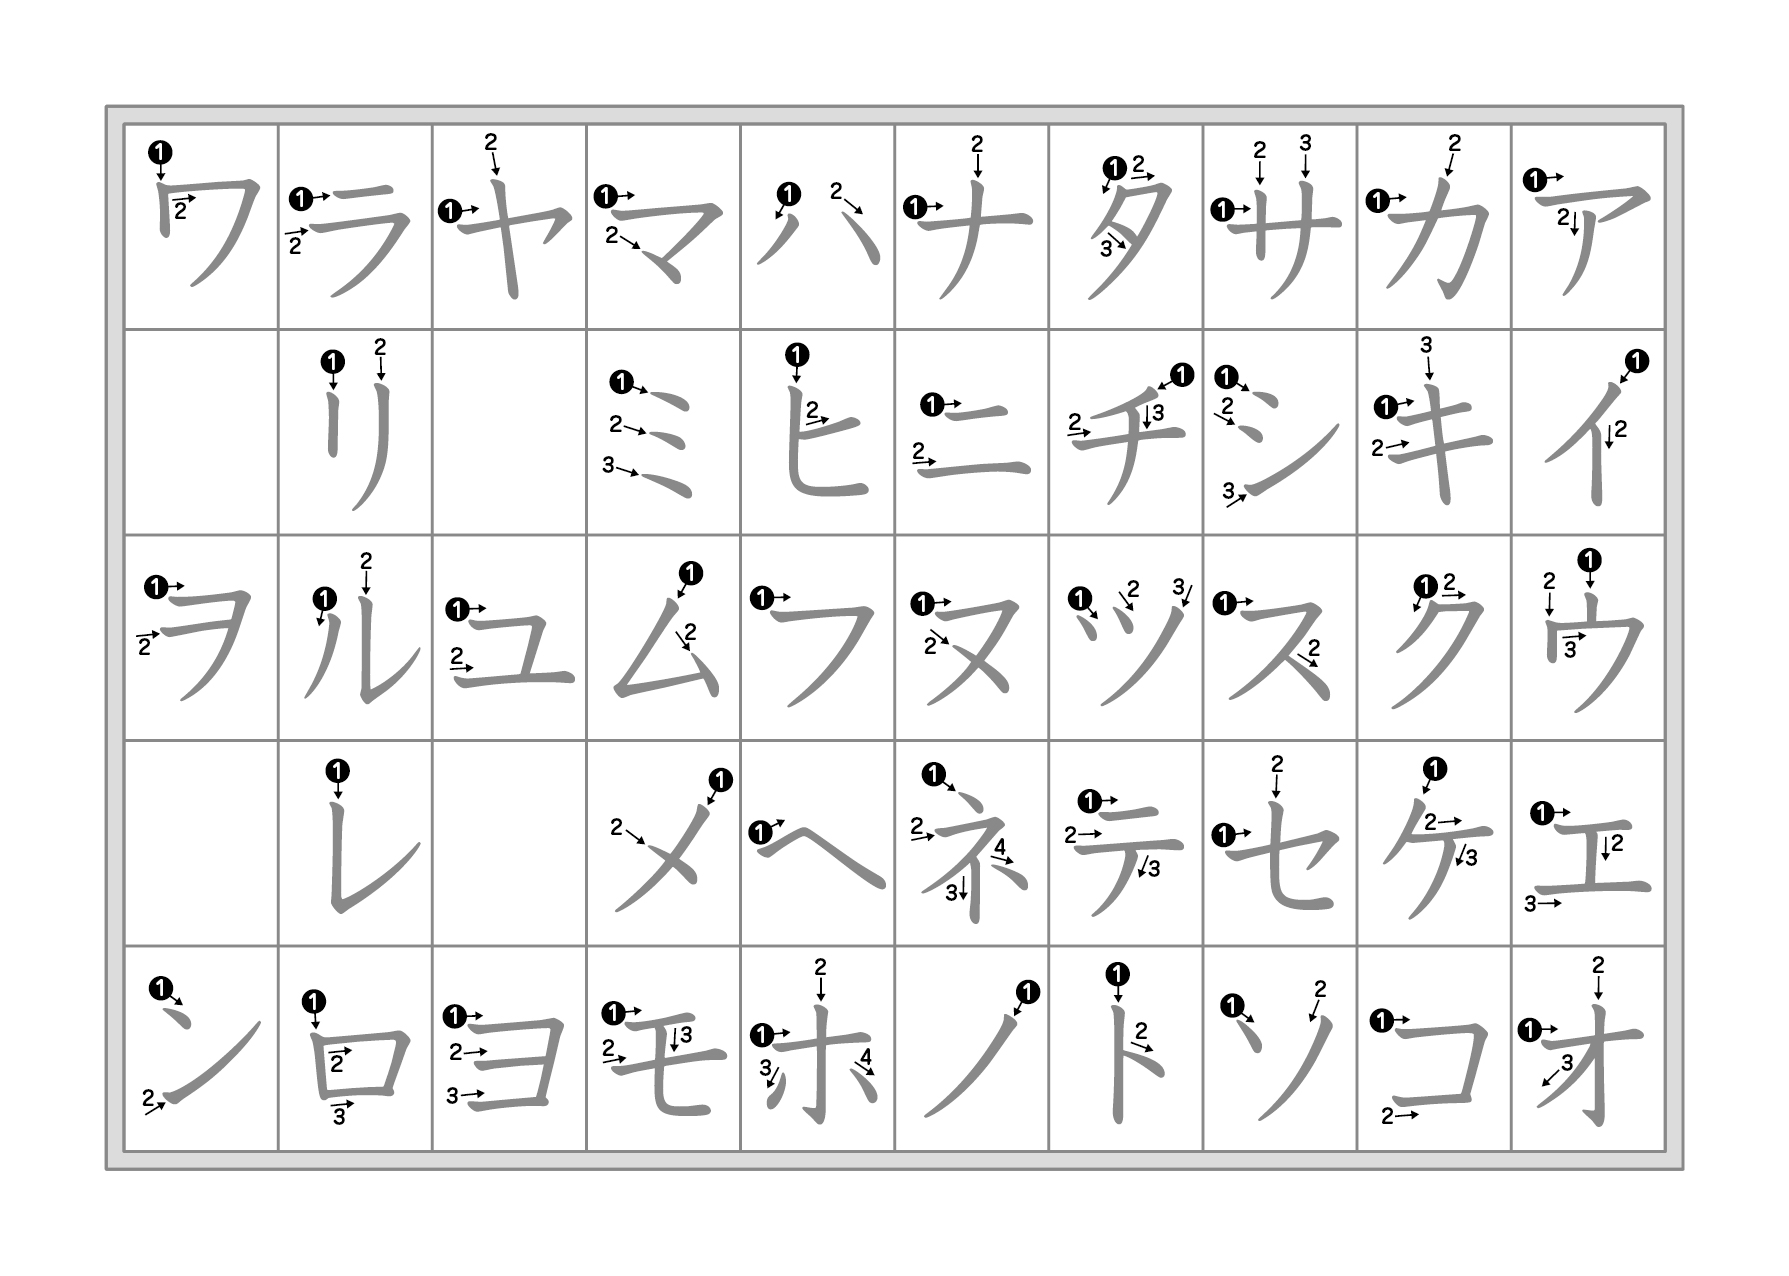 Hiragana And Katakana Chart With Stroke Order